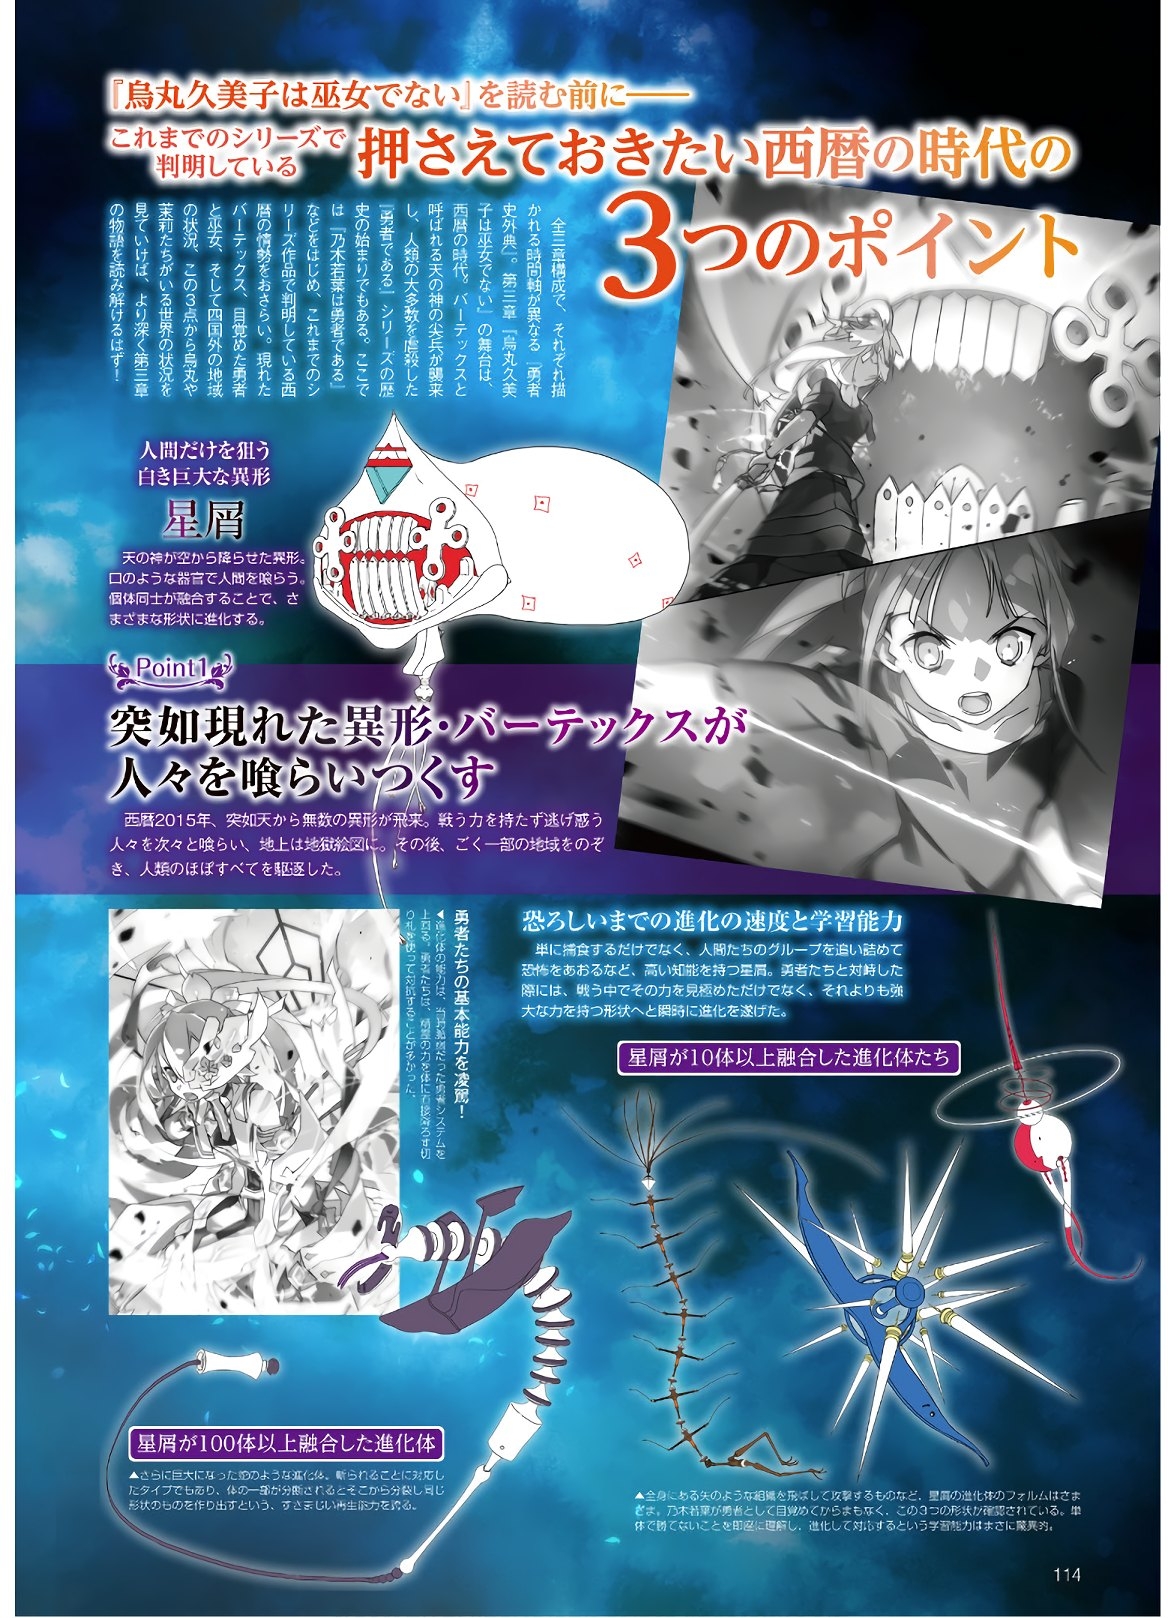 Dengeki G's Magazine #286 - May 2021 111